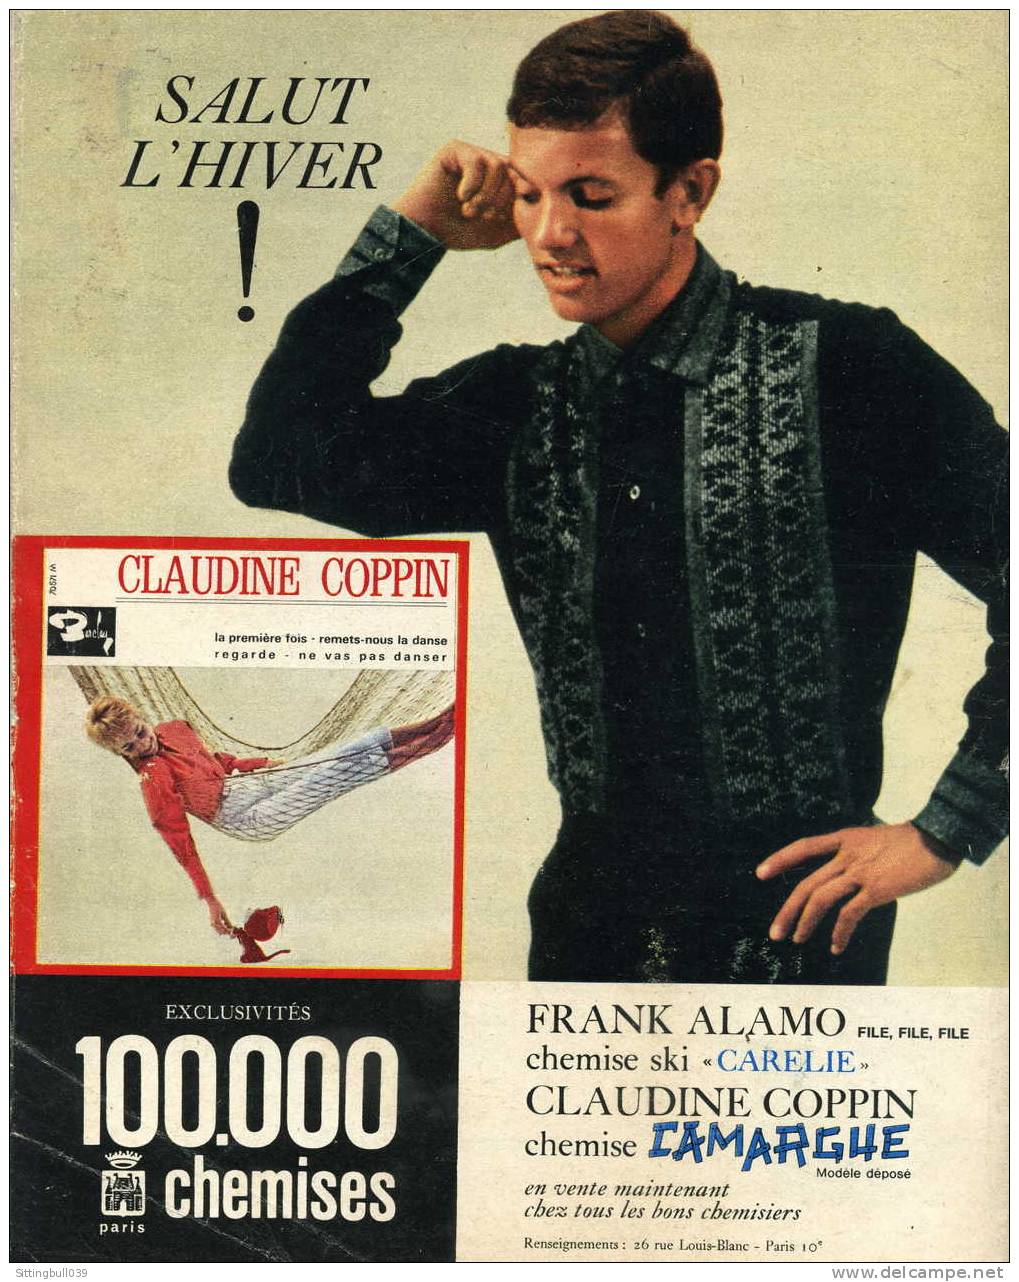 SALUT LES COPAINS N° 16. (SLC).  Novembre 1963. CLAUDE FRANCOIS. STEVIE WONDER. SHEILA, Etc. POSTERS Et SUPERBES PHOTOS. - Musik